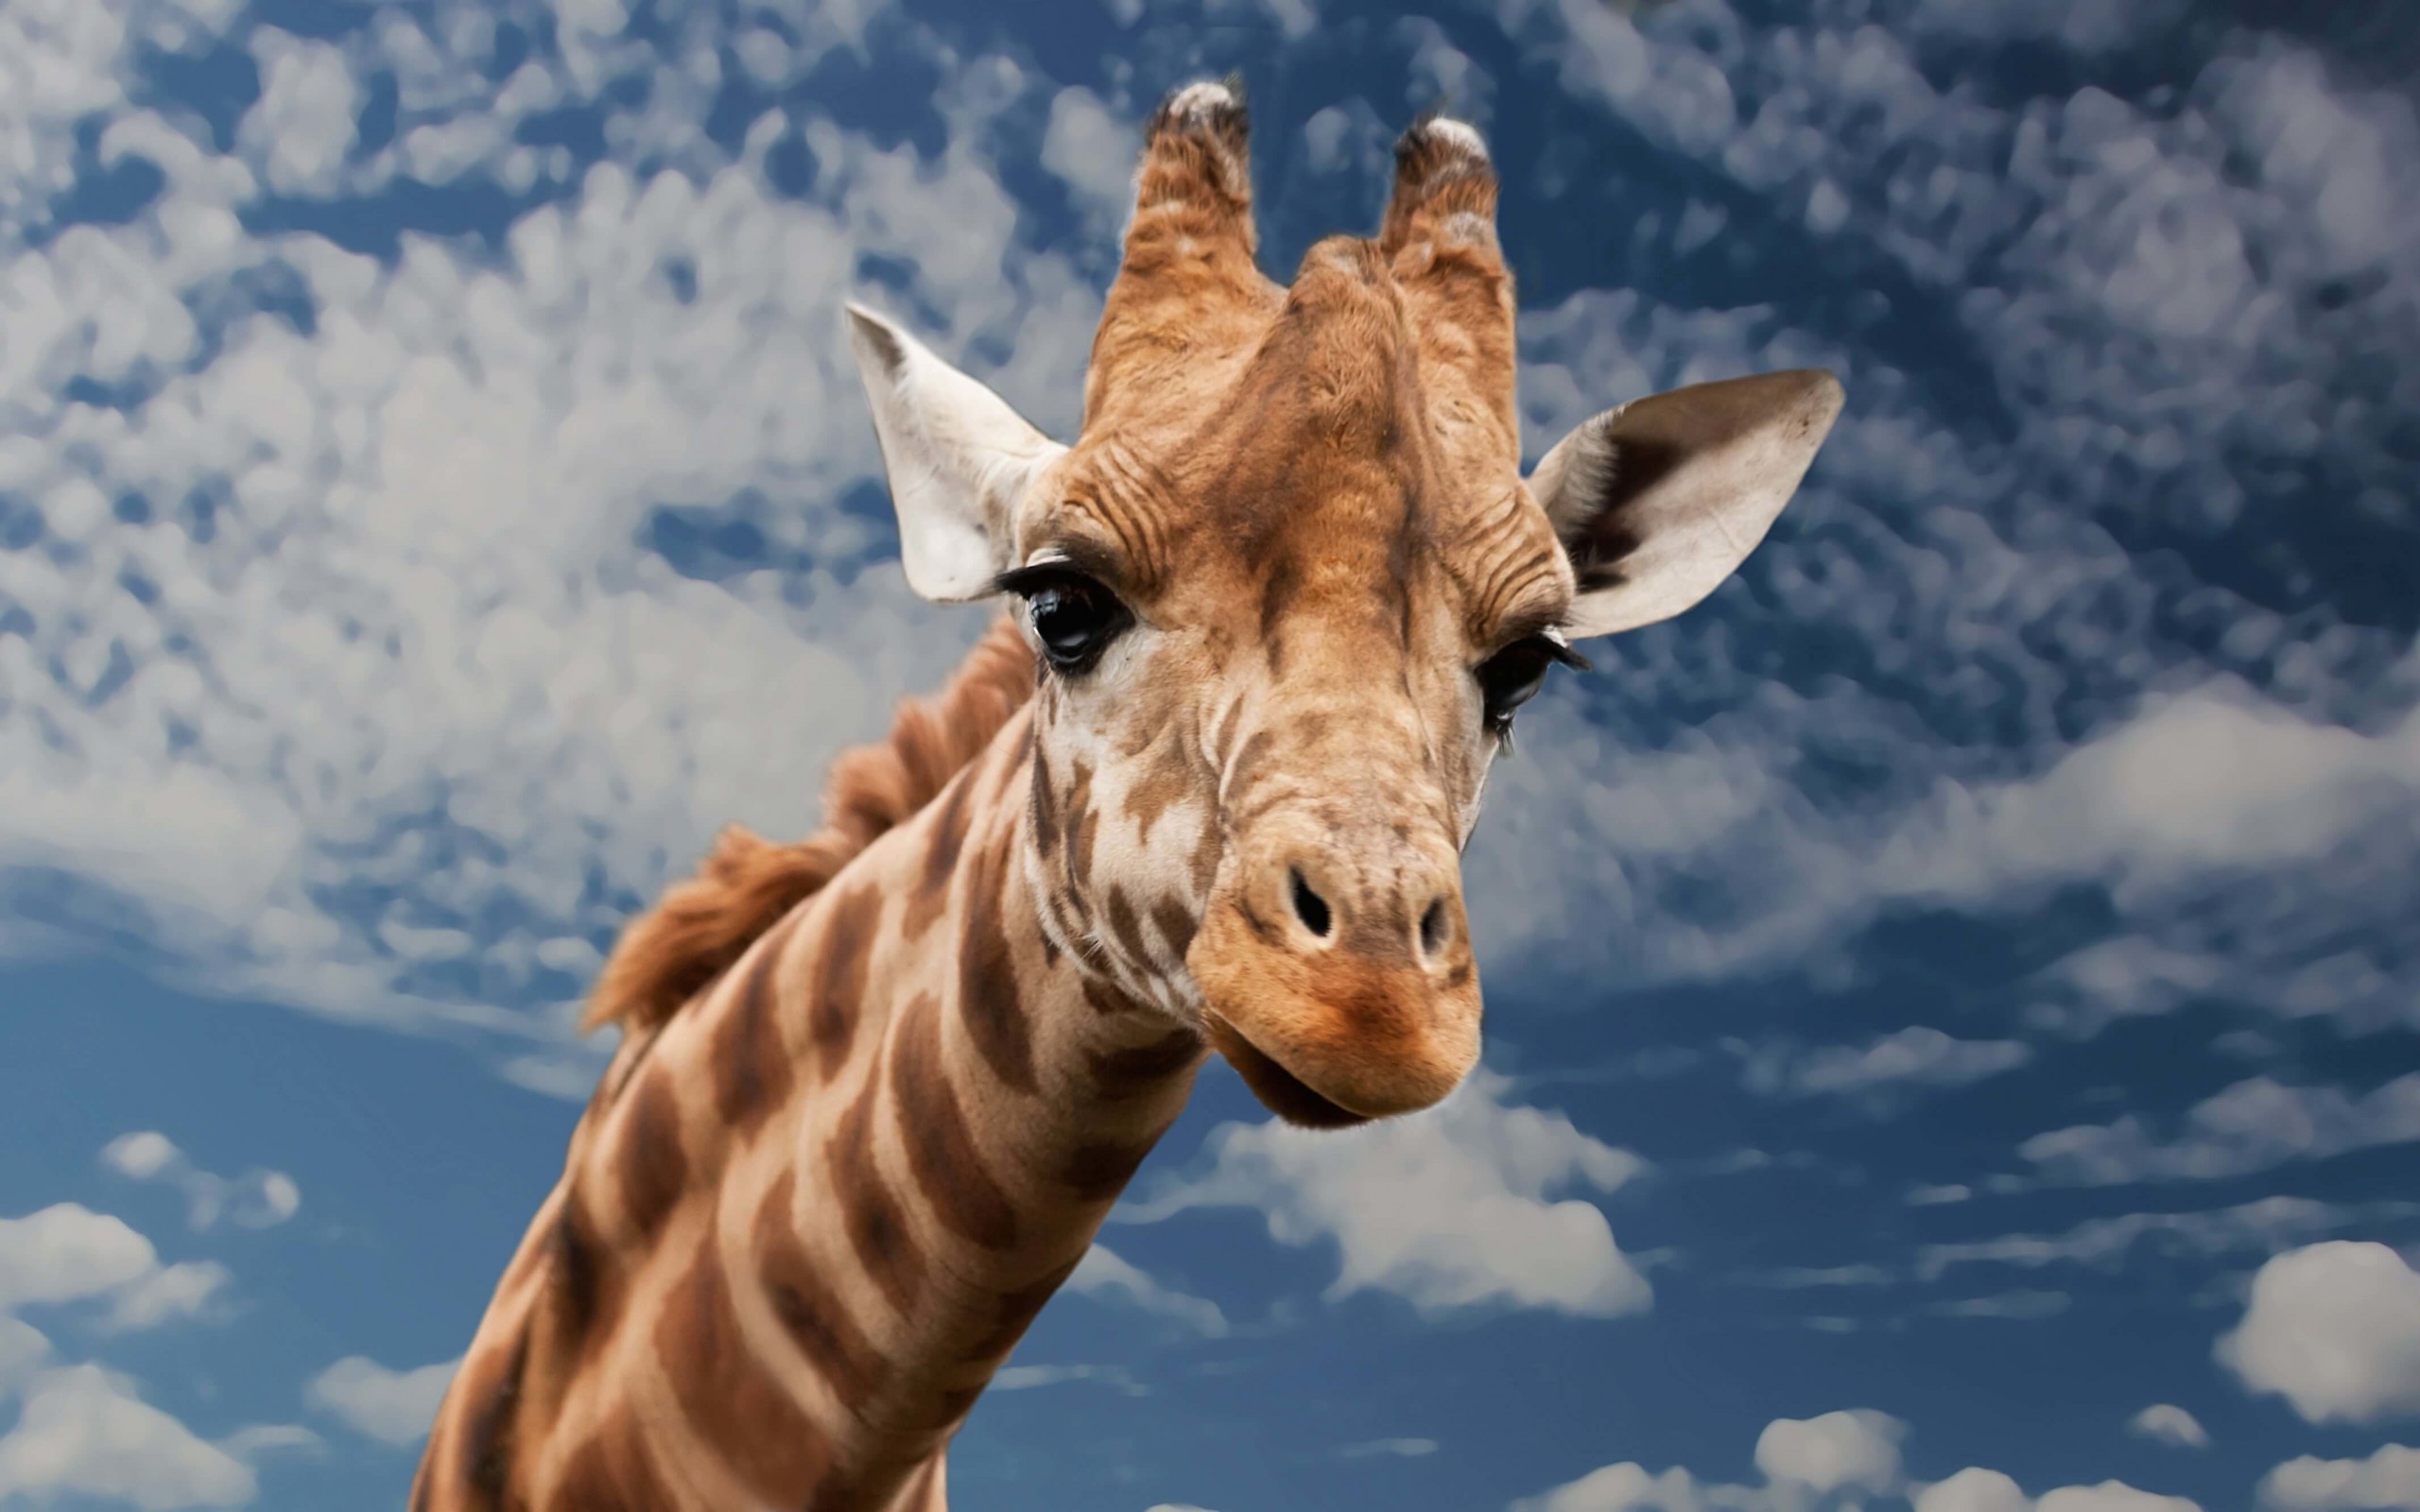 Funny Giraffe Wallpaper for Desktop 2560x1600